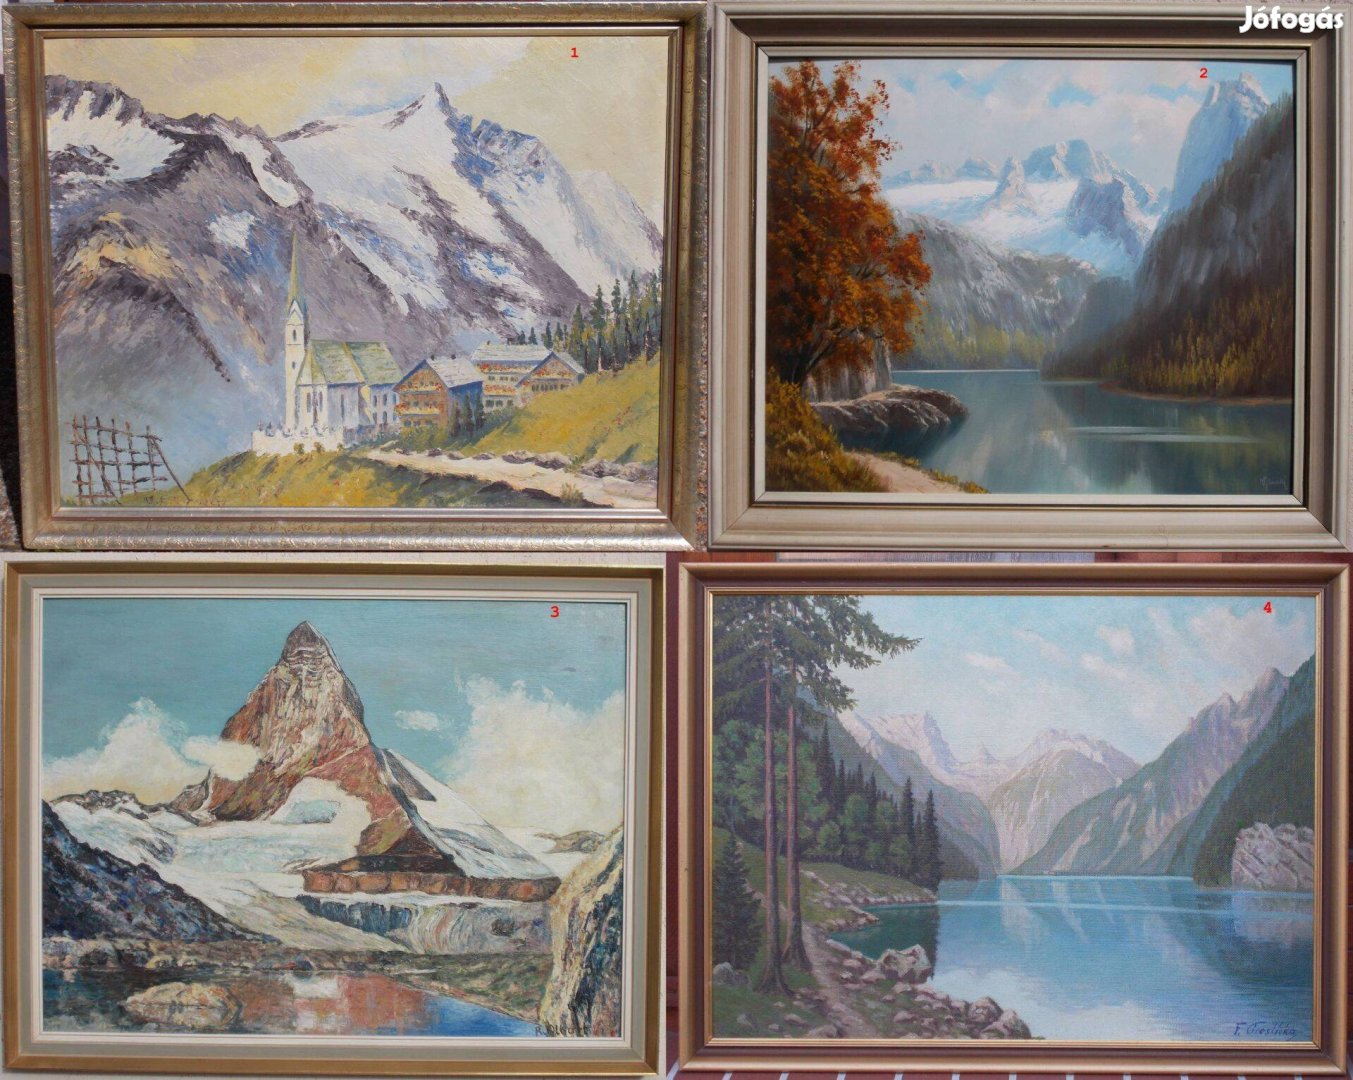 Alpesi festmények egy tételben darabár 22ezer